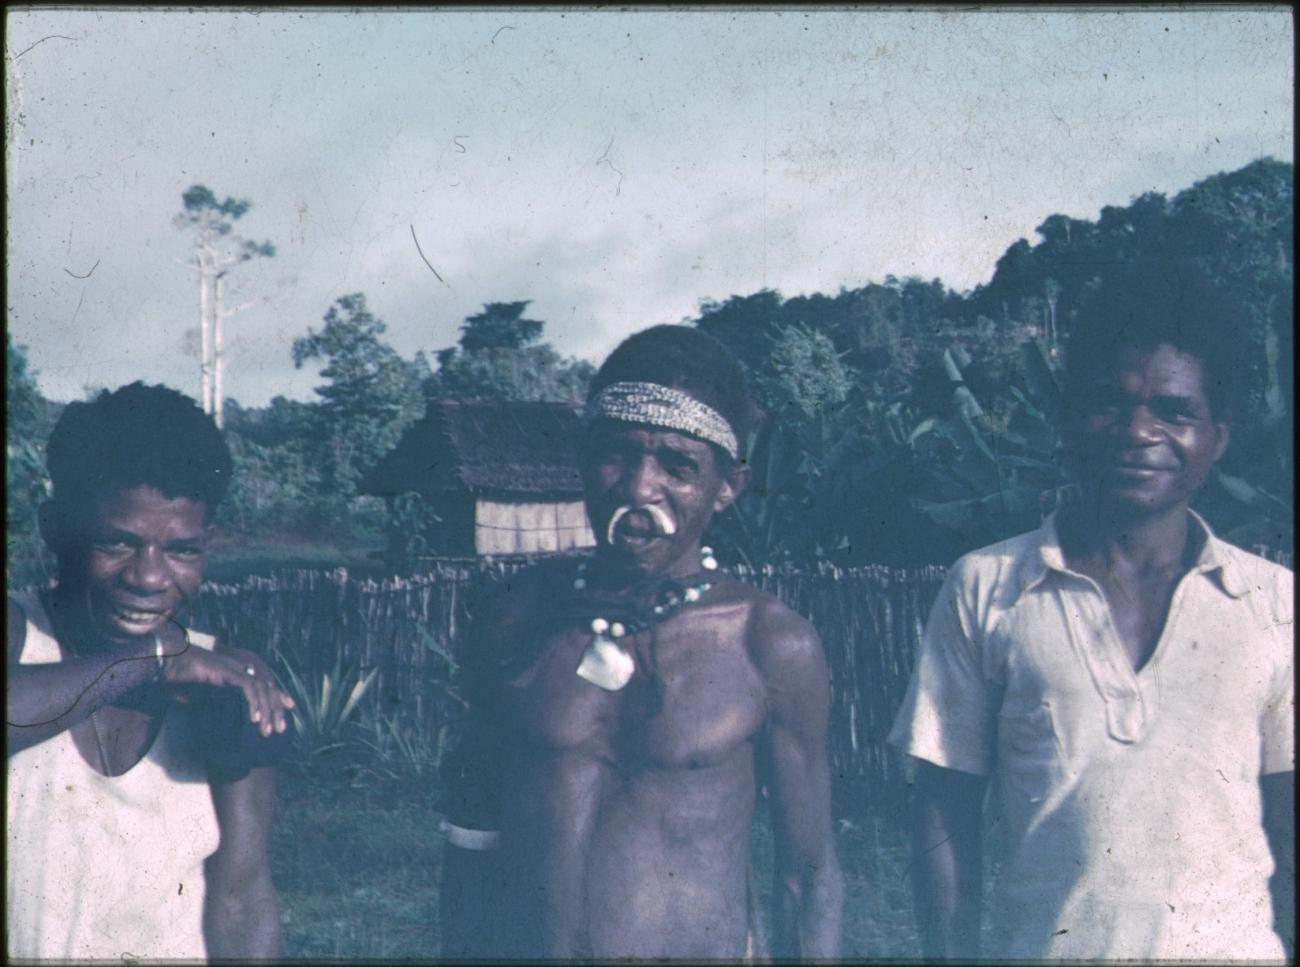 BD/309/195 - 
Drie mannen waarvan een met traditionele hals- en neusversiering 
